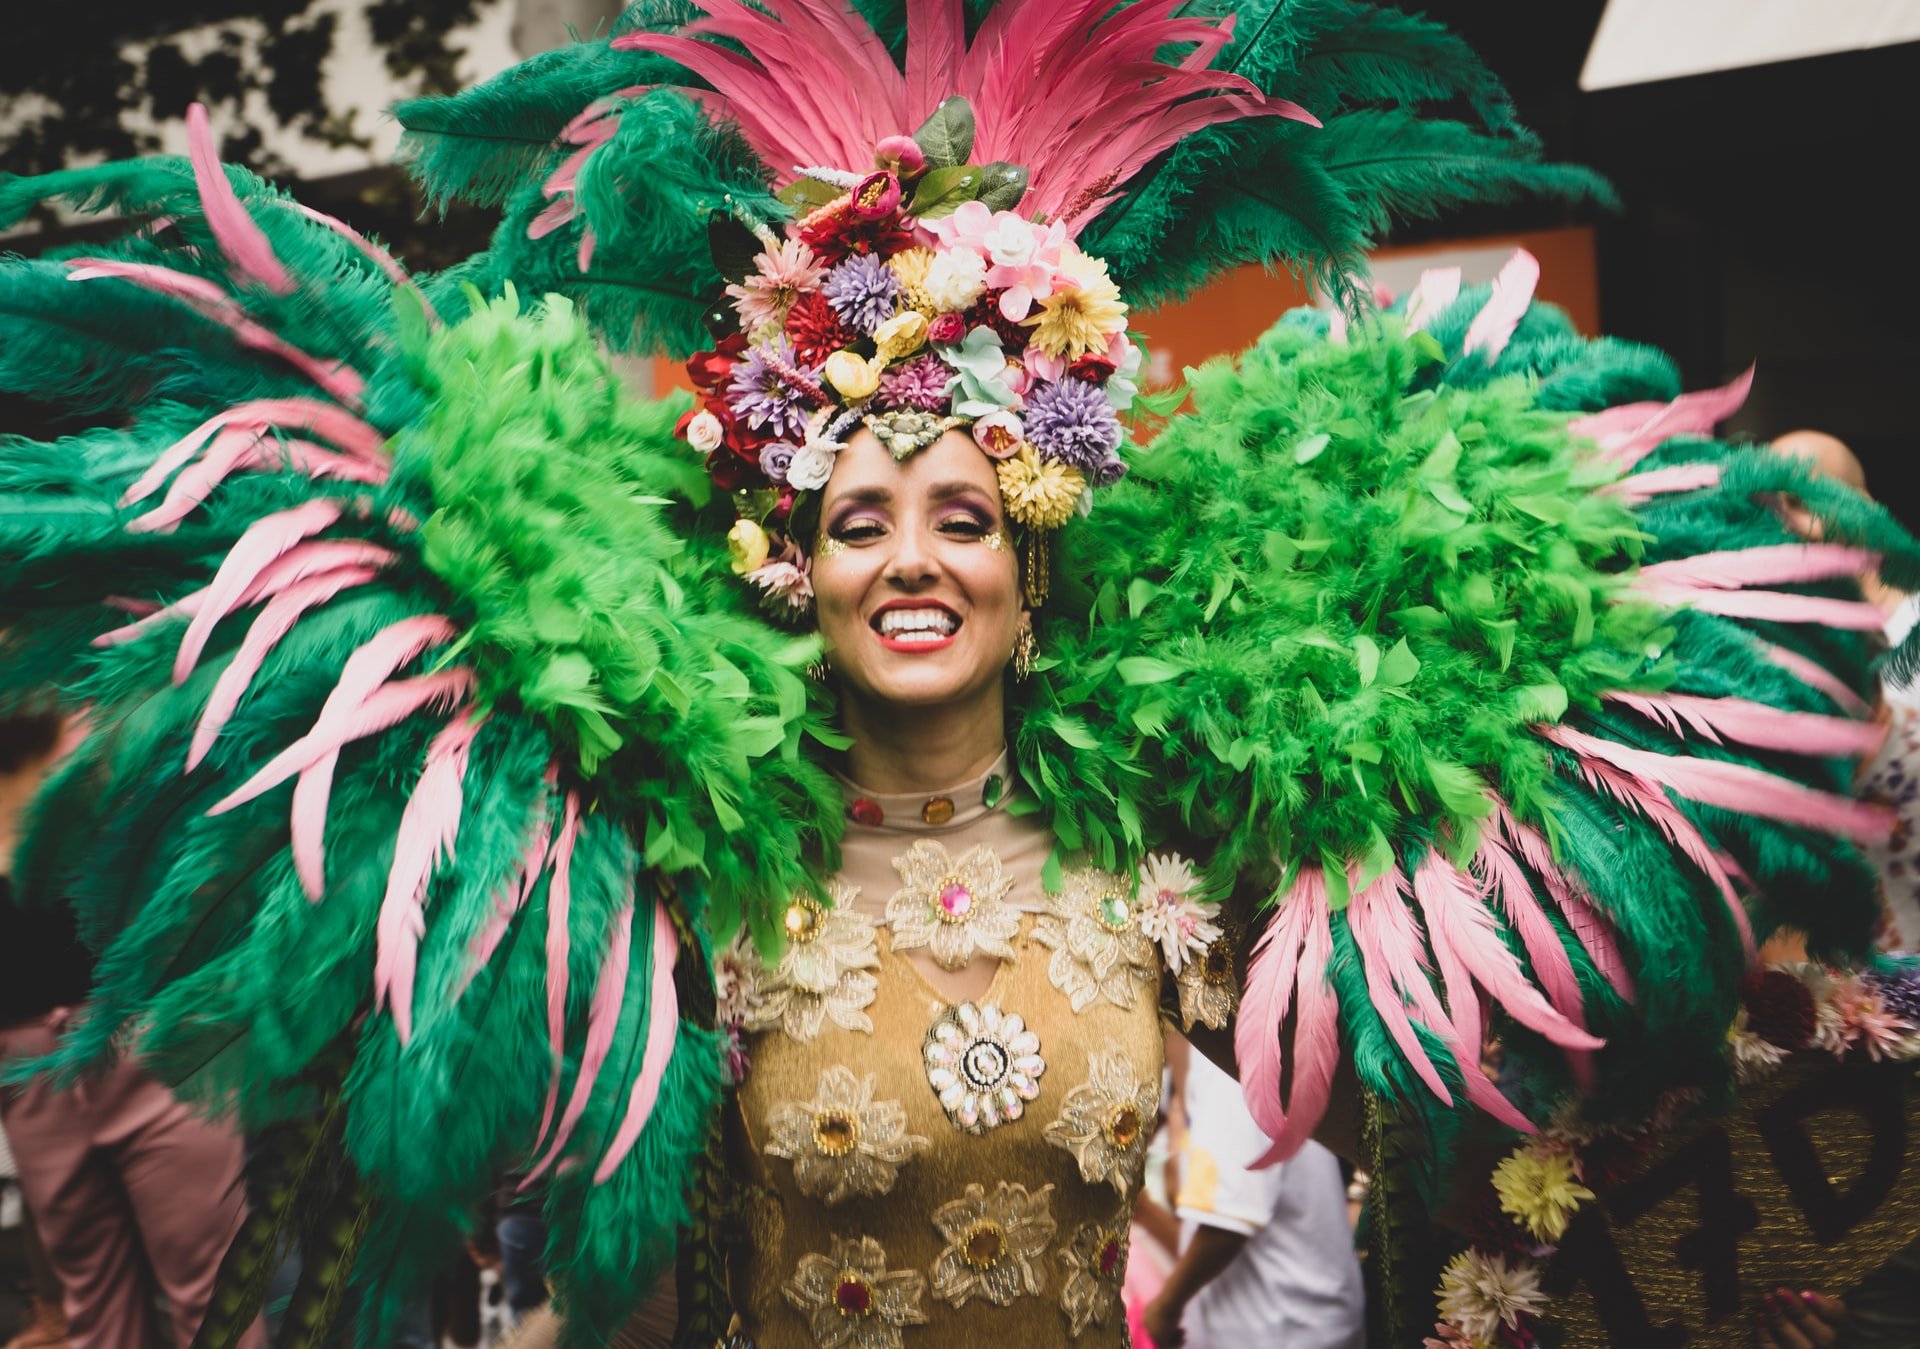 Mulher com fantasia carnavalesca grande, com ombreiras cheia de penas e chapéu grande, sorrindo para a câmera.